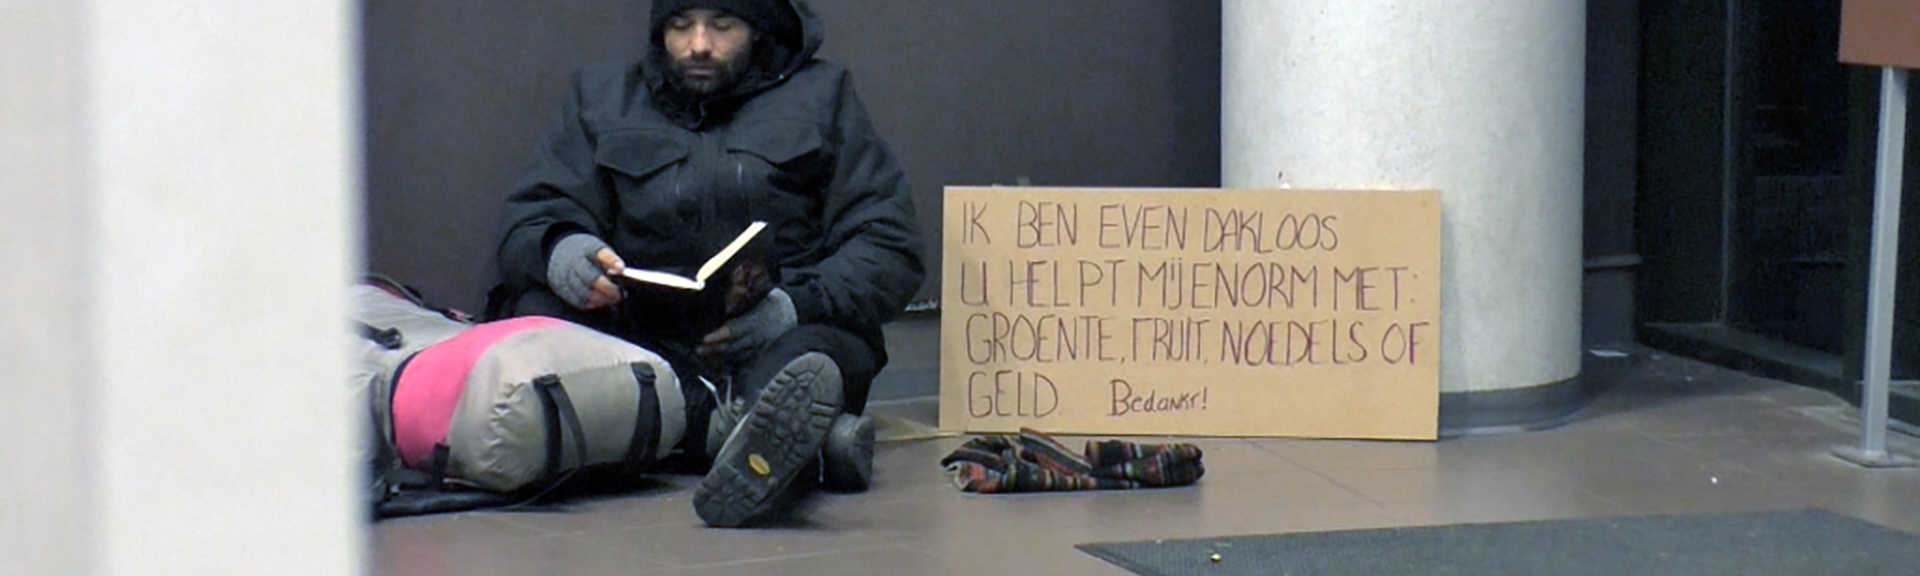 The Homeless Experience gemist? Terugkijken doe je op NPO3.nl